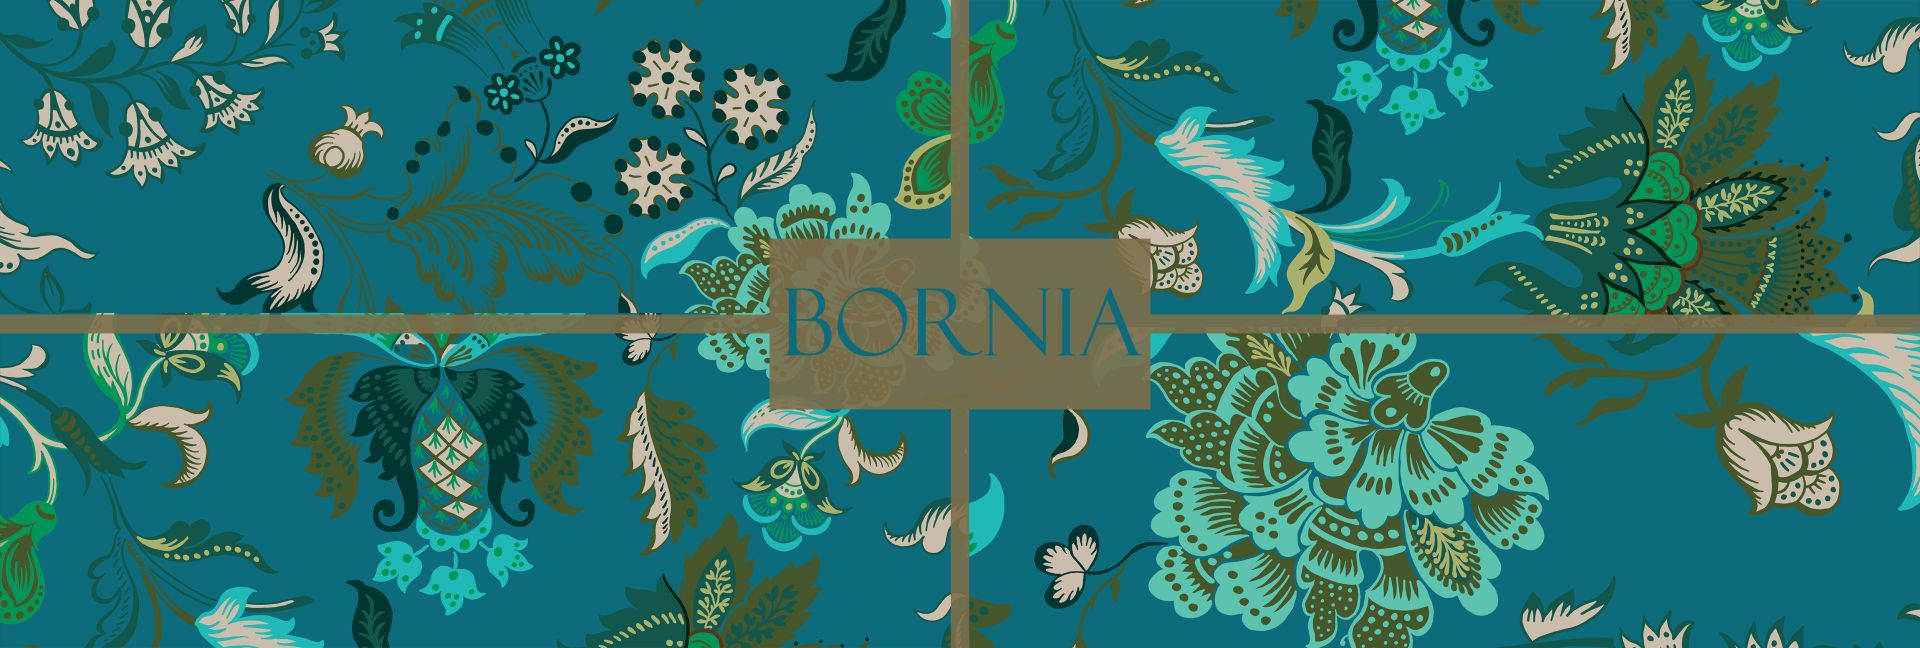 banner bornia_1920x1920